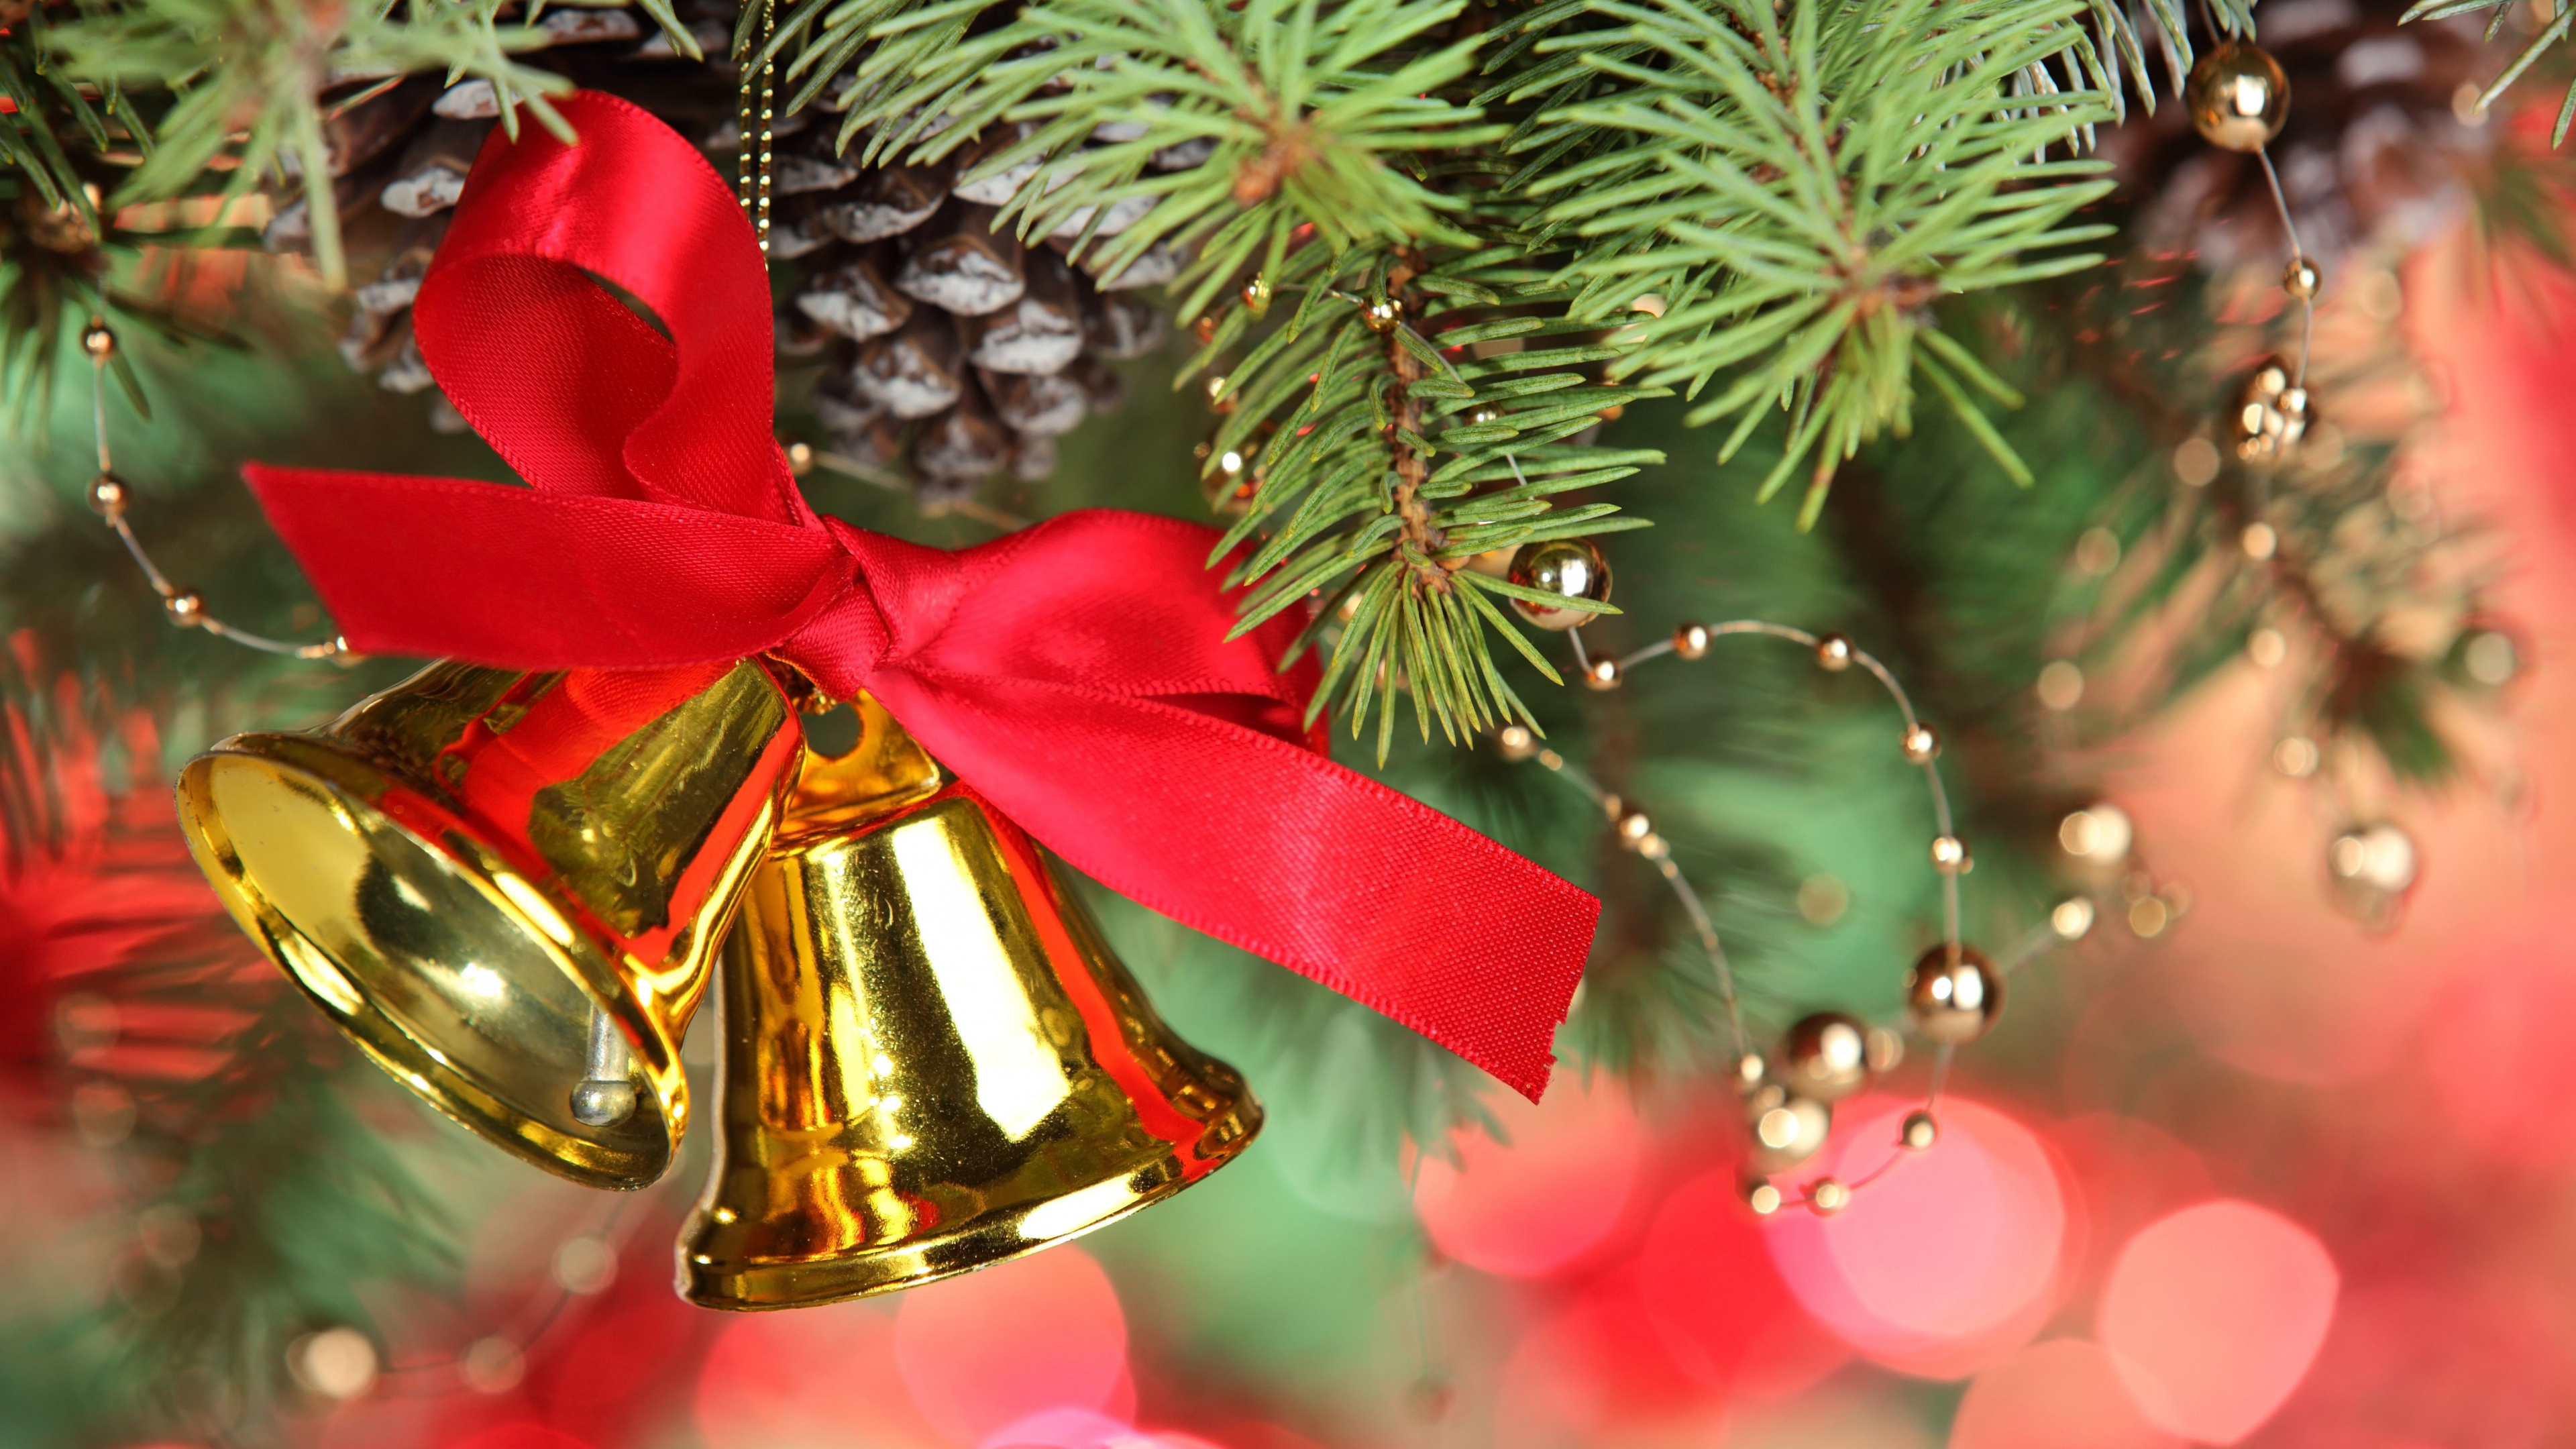 Weihnachtsdekoration, Weihnachten, Jingle Bell, Weihnachtsbaum, Christmas Ornament. Wallpaper in 3840x2160 Resolution